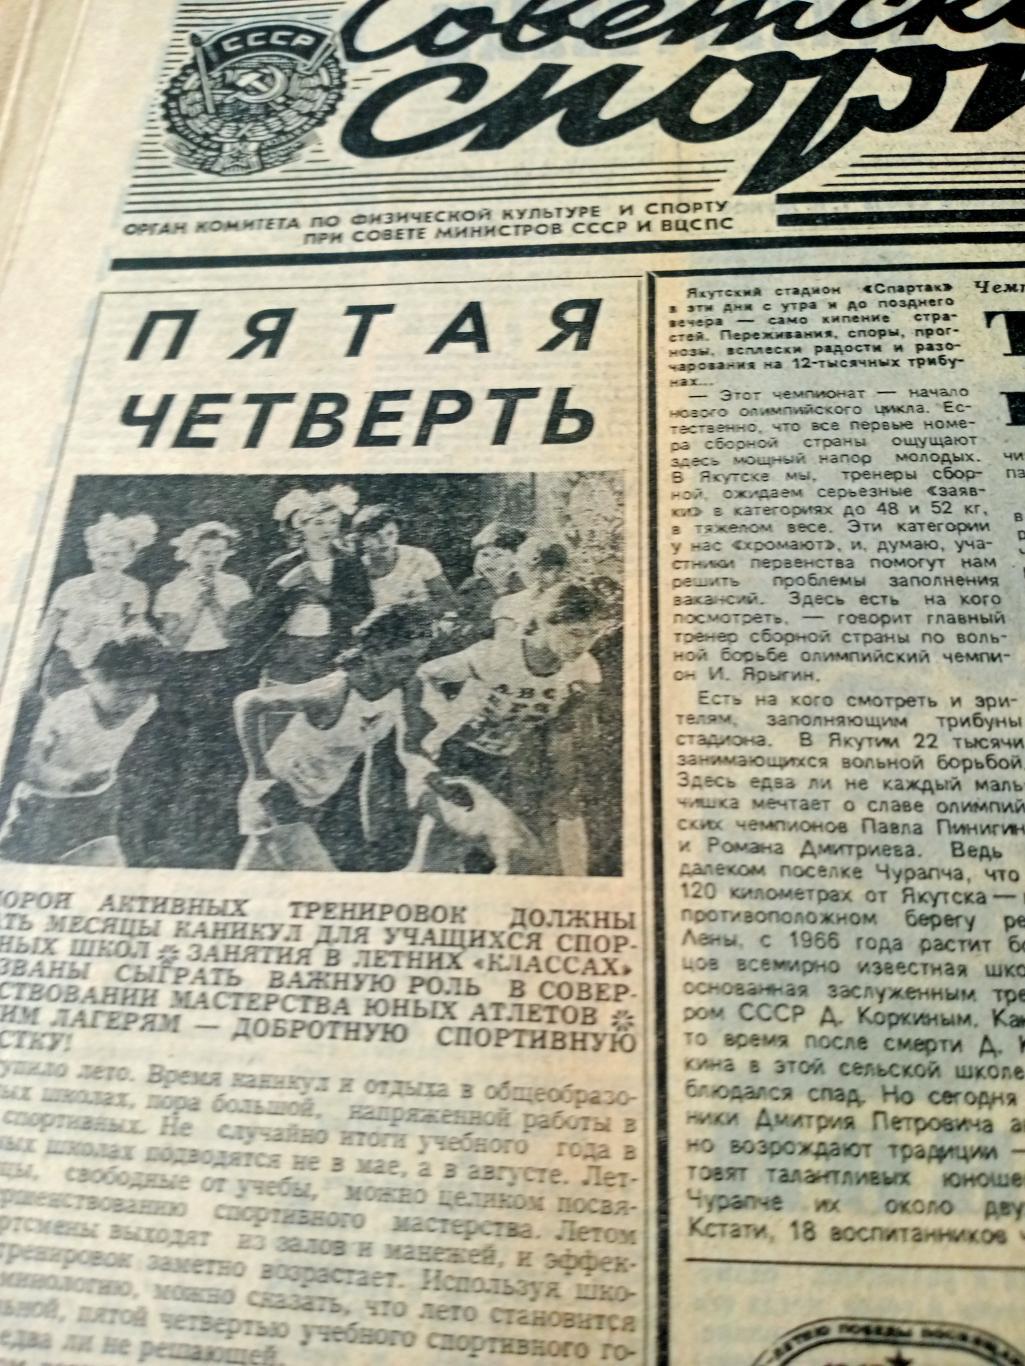 Футбол. К итогам юношеского ЧЕ. Советский спорт.1985 год. 23 июня